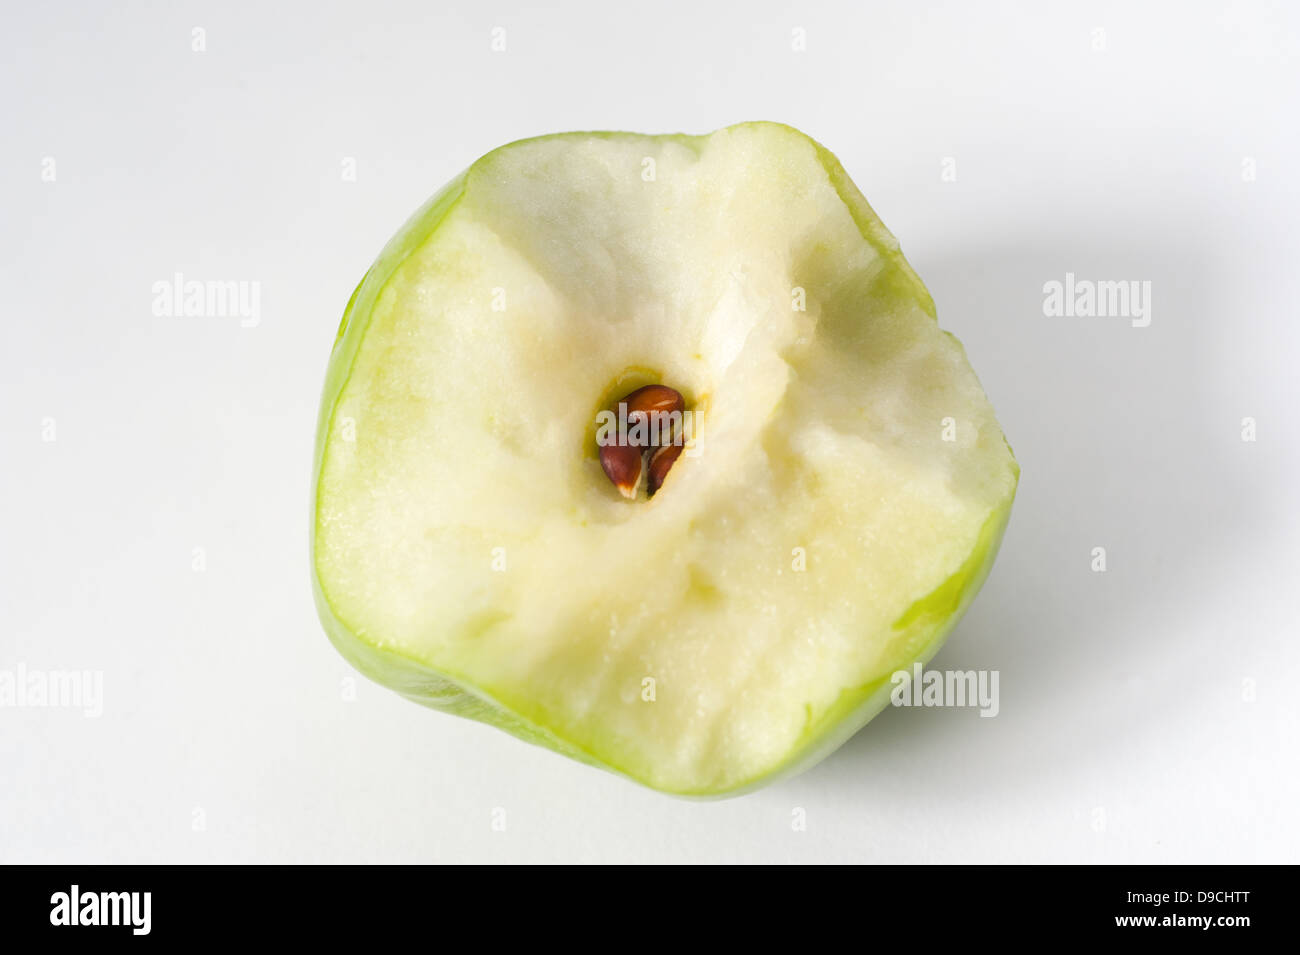 Eine halbe grüne Apfel zeigt den Kern und die Samen gegessen Stockfoto